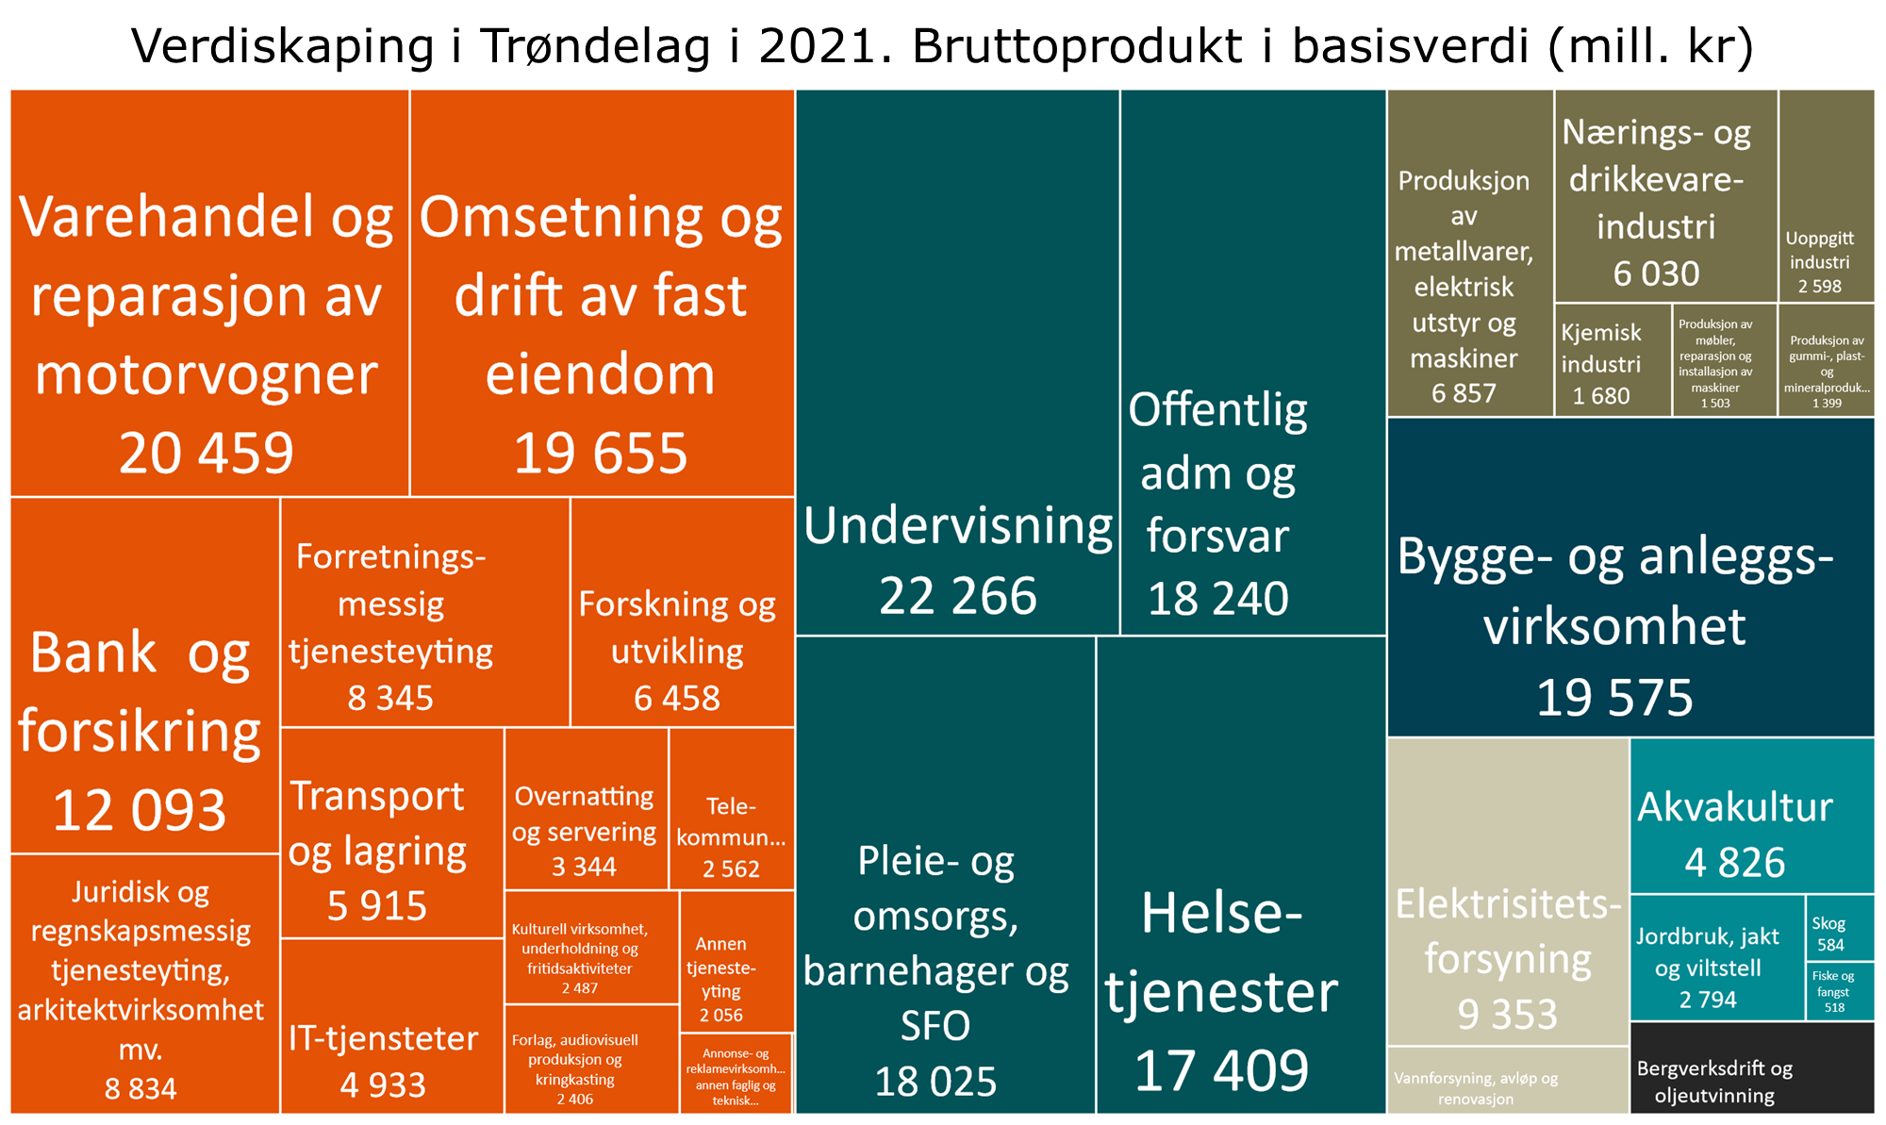 Verdiskaping i Trøndelag i 2021. Bruttoprodukt i basisverdi (mill. kr)